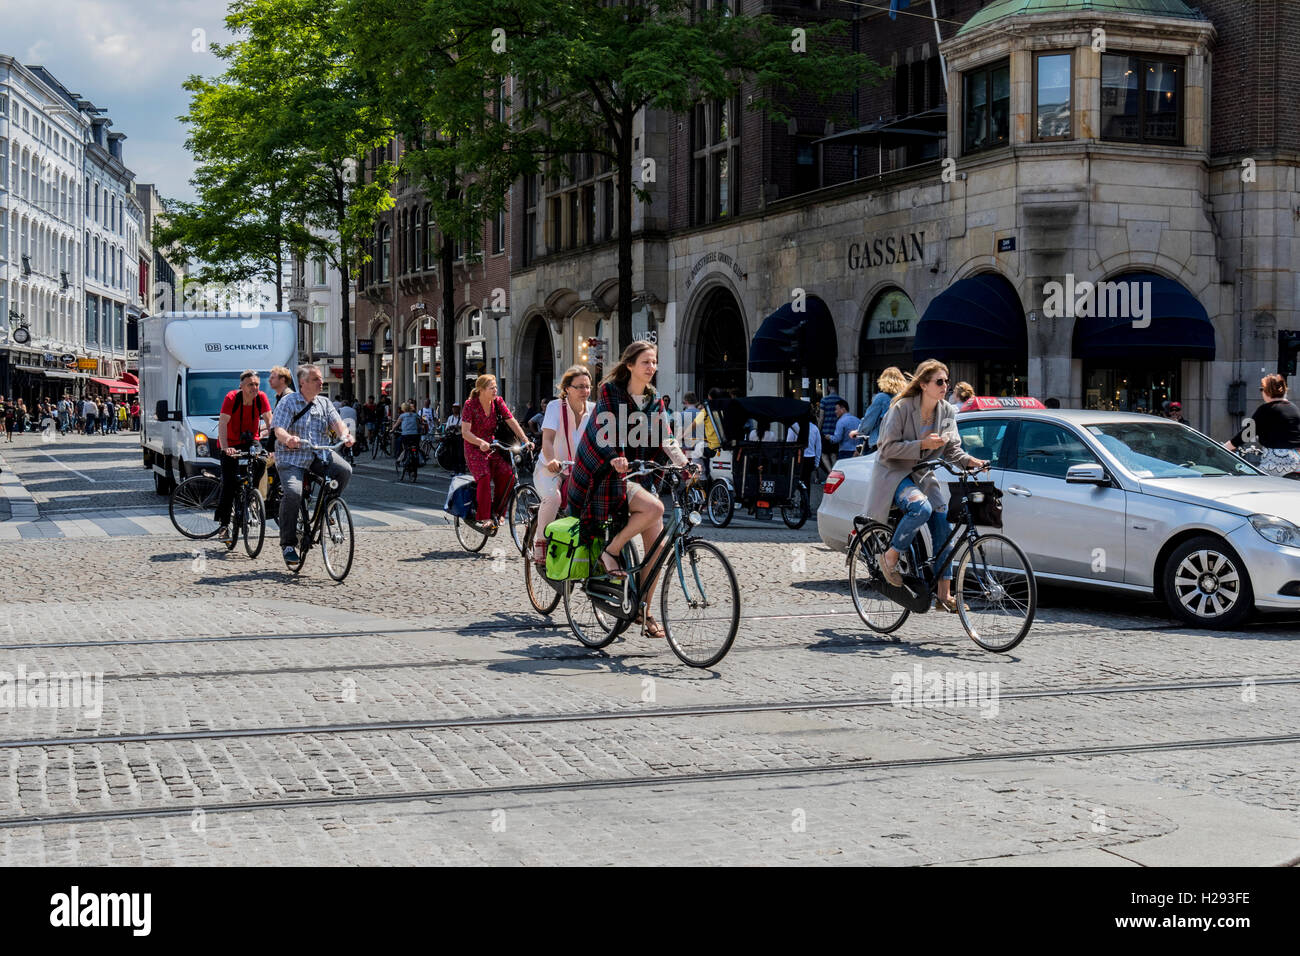 Ciclista nella città di Amsterdam ciclista giocano un ruolo importante e sono incoraggiati da un sicuro sistema di strade tra cui piste ciclabili Foto Stock